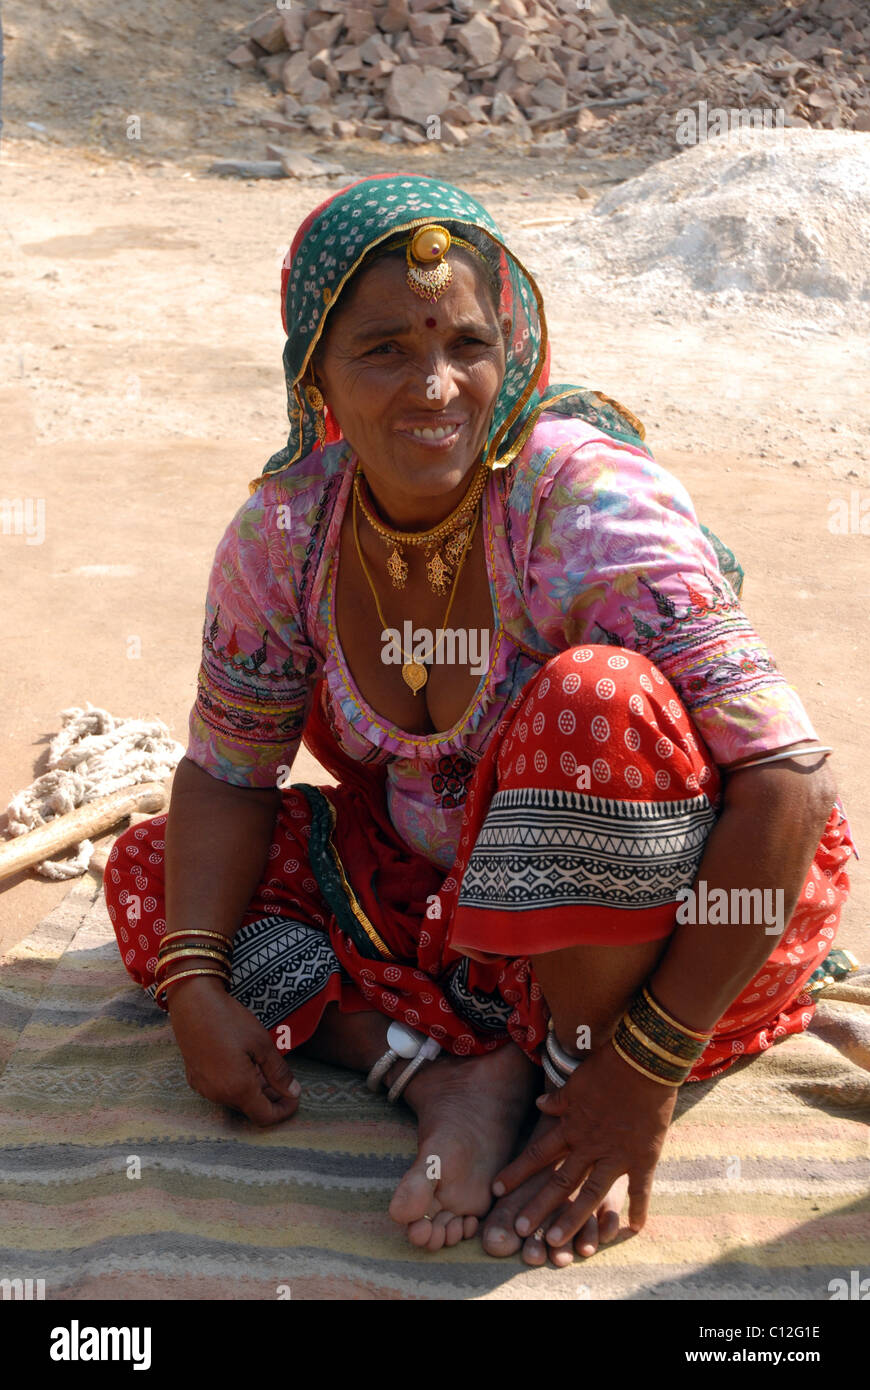 Portrait de femme indienne s'accroupir/assis sur une couverture dans le désert du Rajasthan Banque D'Images